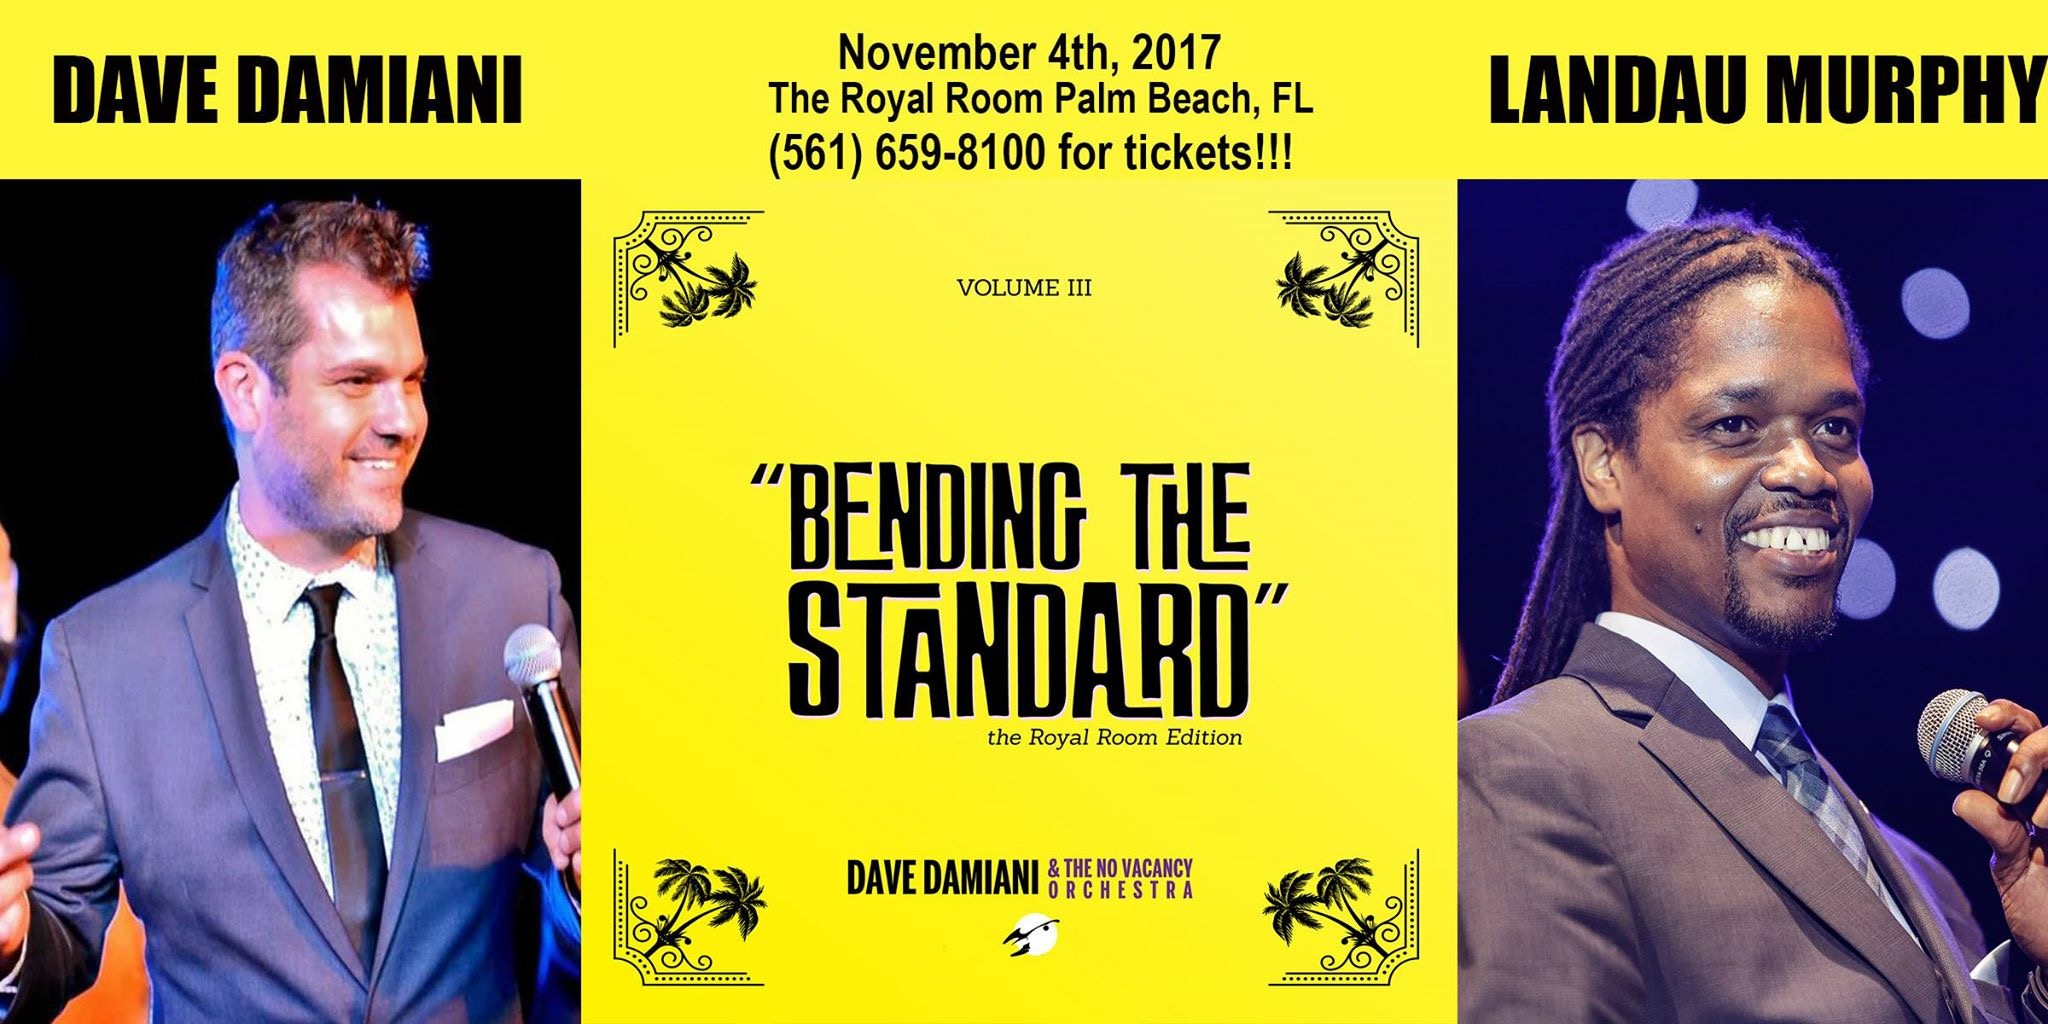 BENDING THE STANDARD - Dave Damiani & Landau Murphy Jr